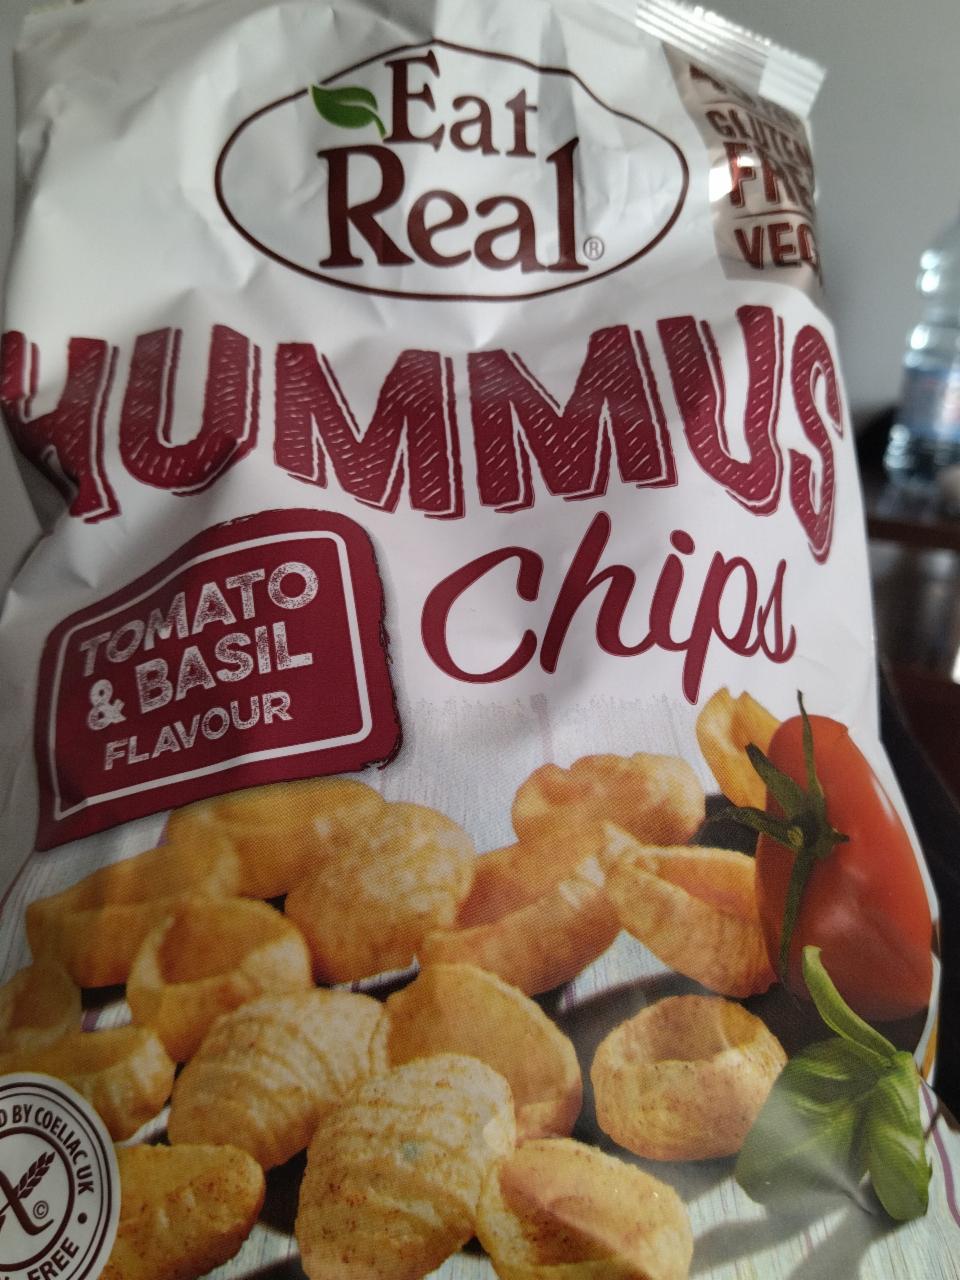 Zdjęcia - hummus chips eat real tomato basil